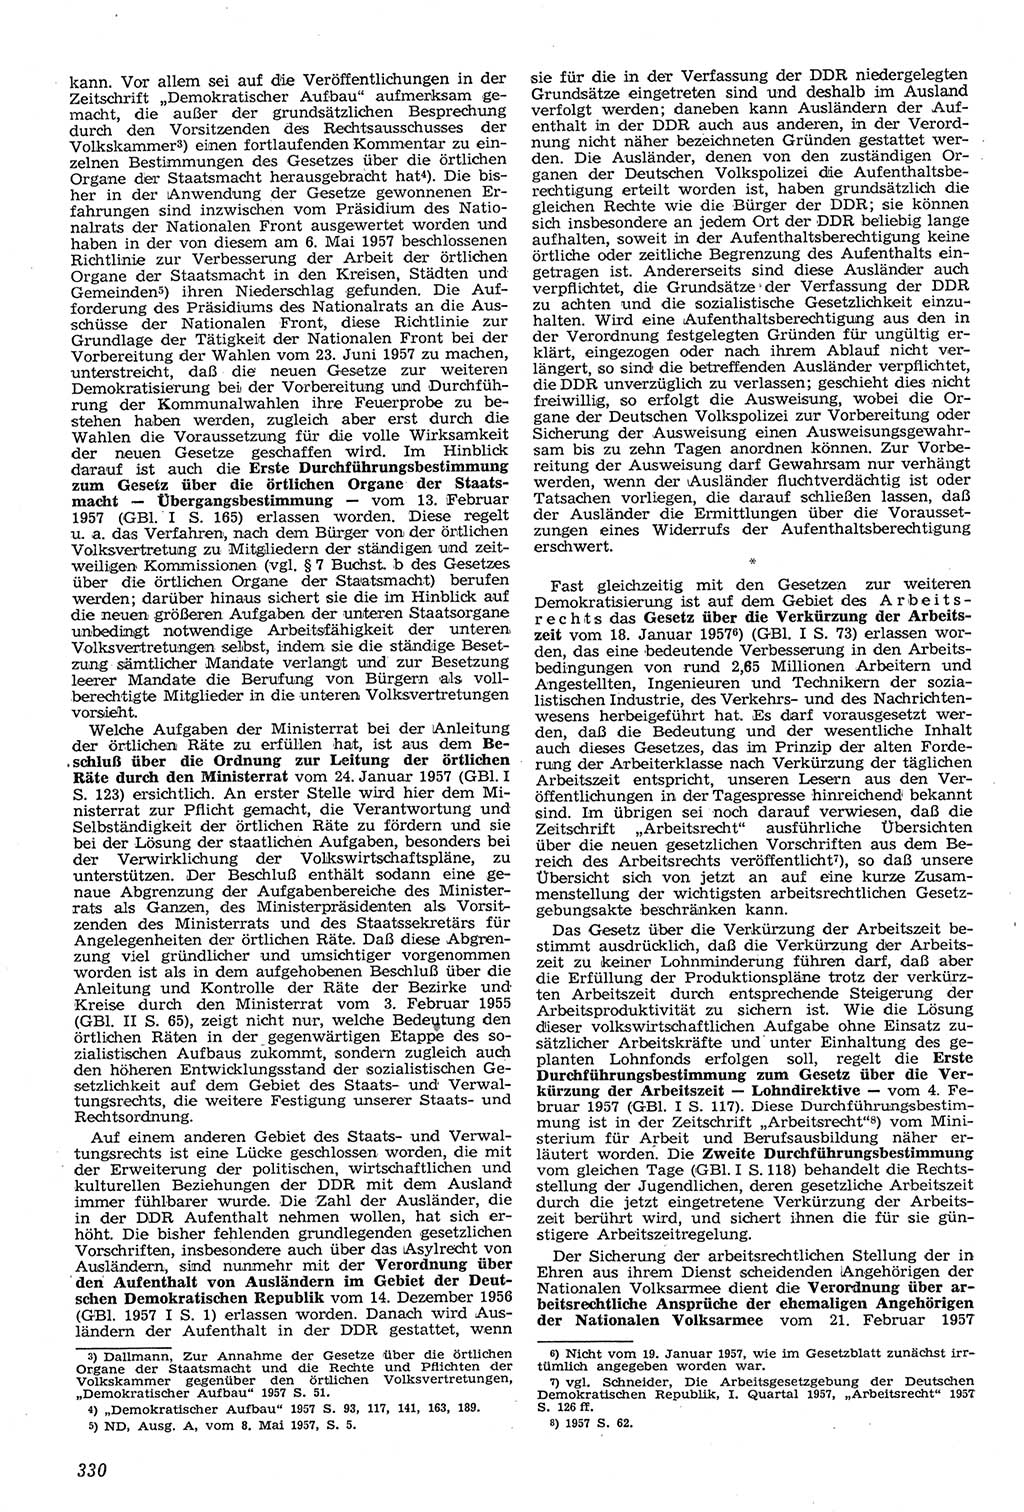 Neue Justiz (NJ), Zeitschrift für Recht und Rechtswissenschaft [Deutsche Demokratische Republik (DDR)], 11. Jahrgang 1957, Seite 330 (NJ DDR 1957, S. 330)